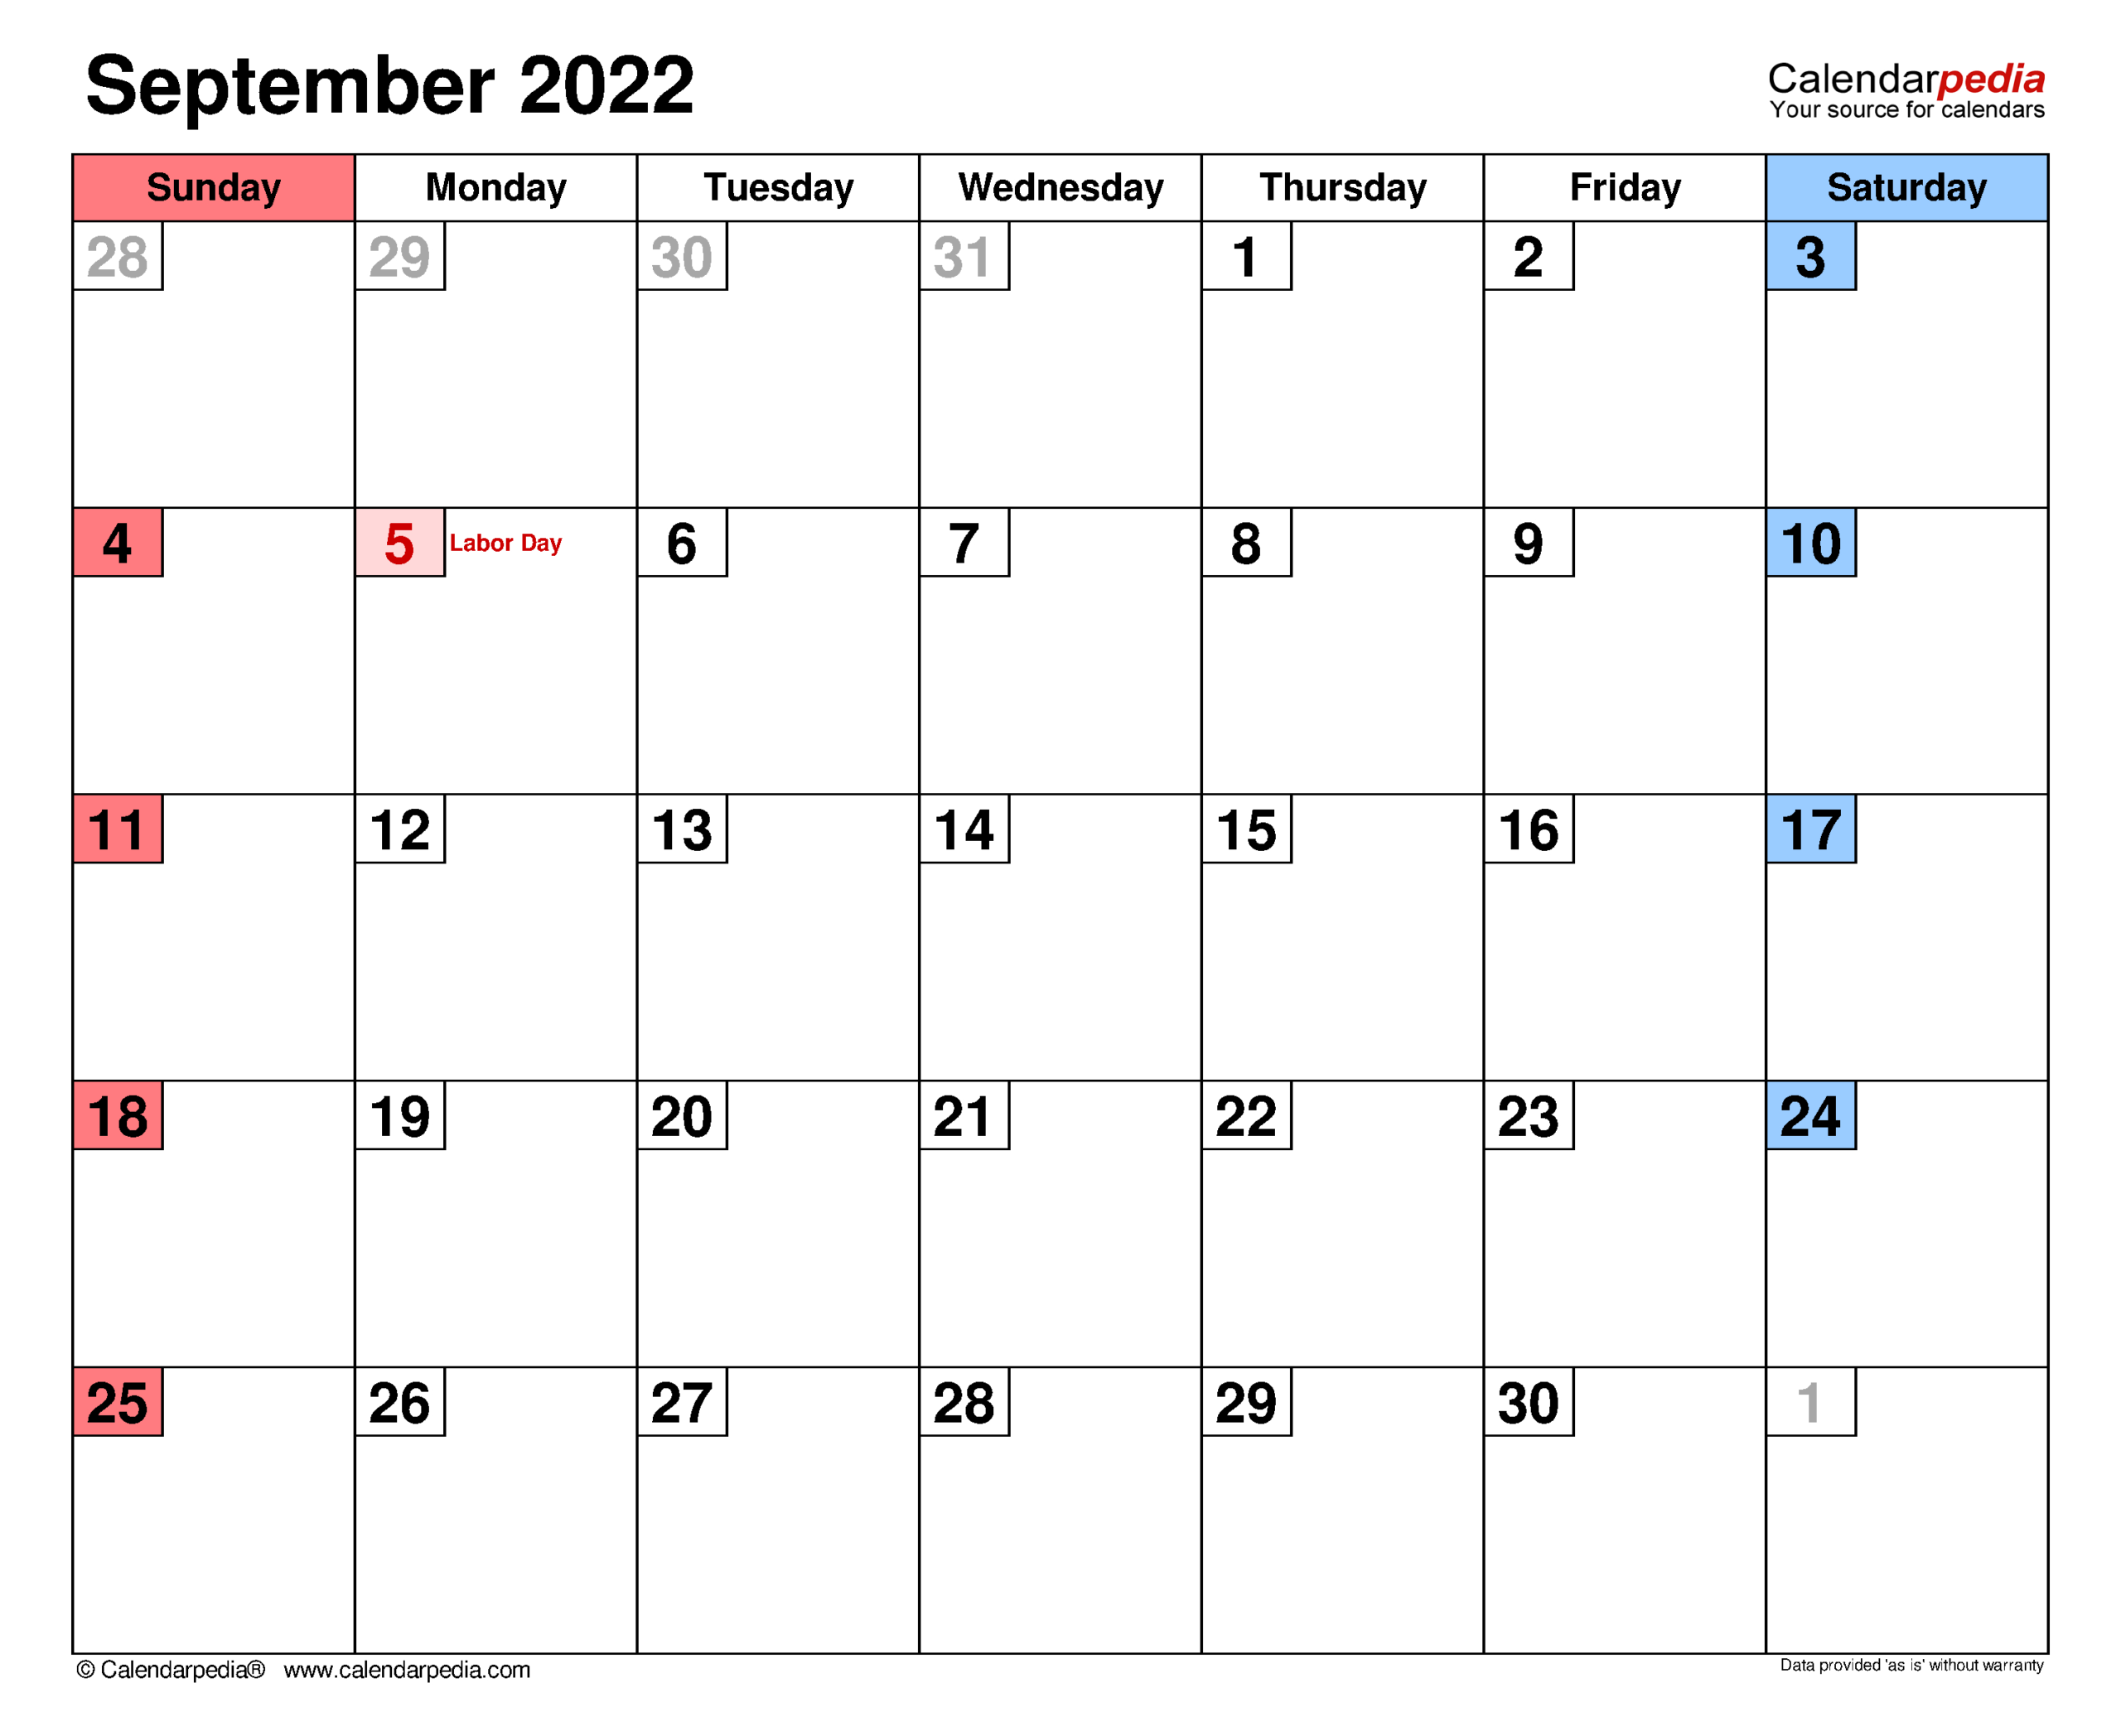 Get Calendar 2022 September Kalnirnay